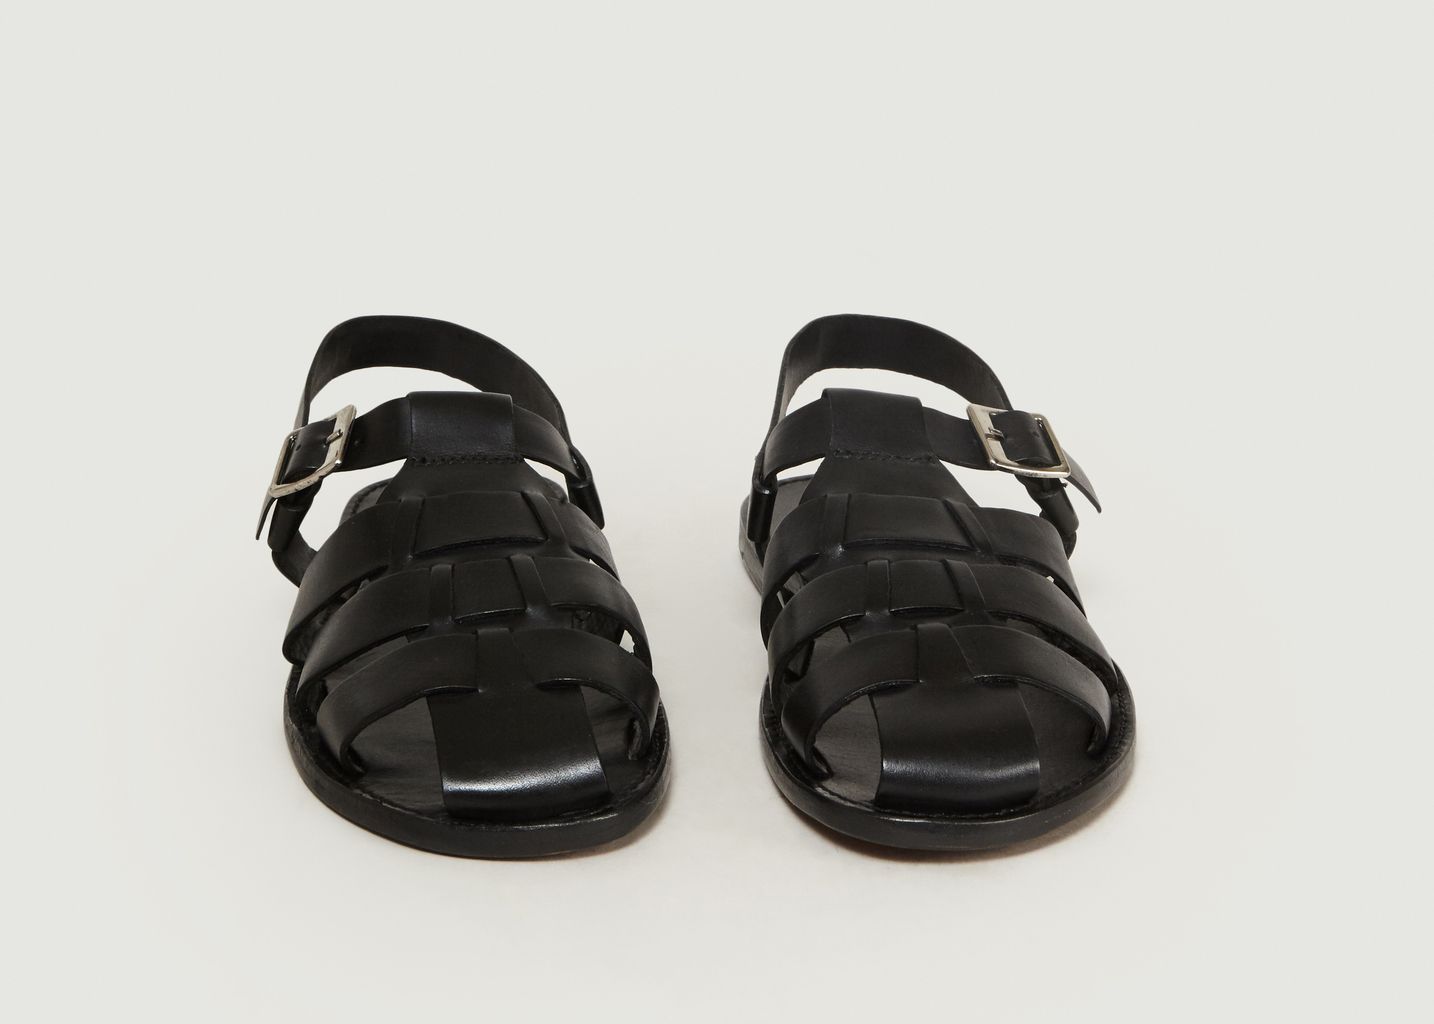 grenson quincy sandals